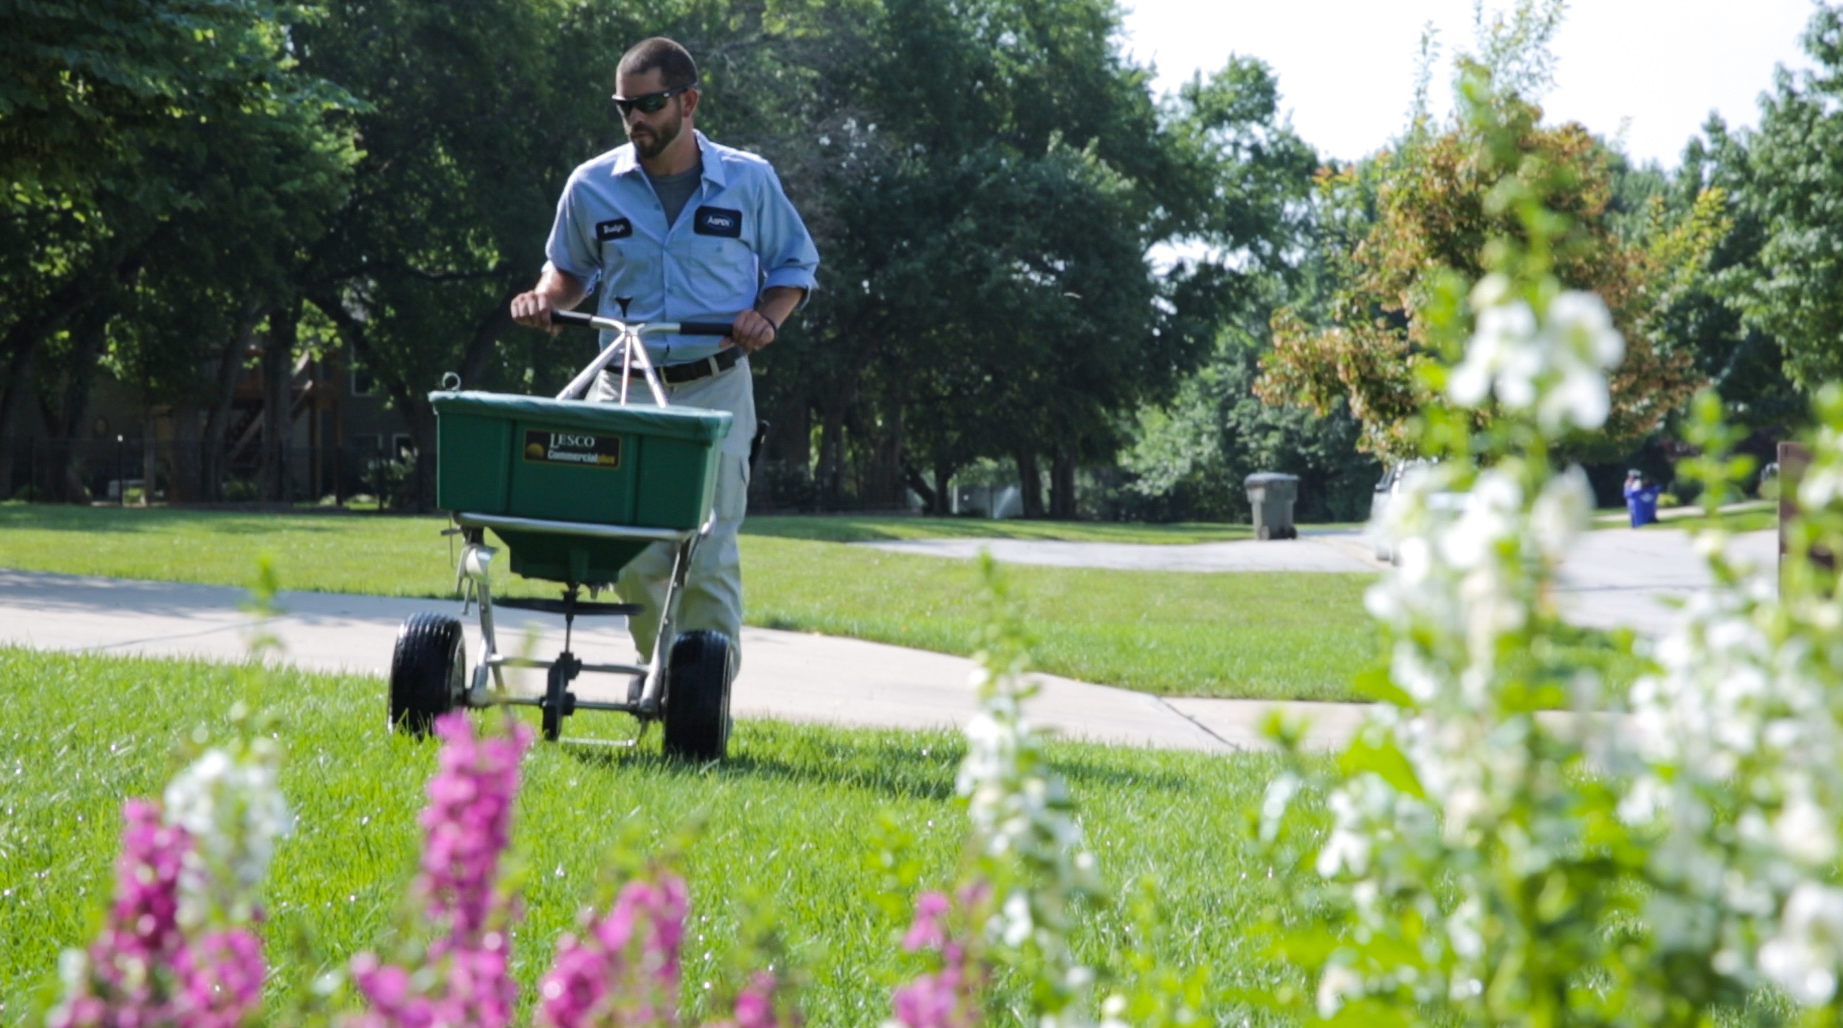 lawn fertilizer treatments overland park, Kansas city, leawood 